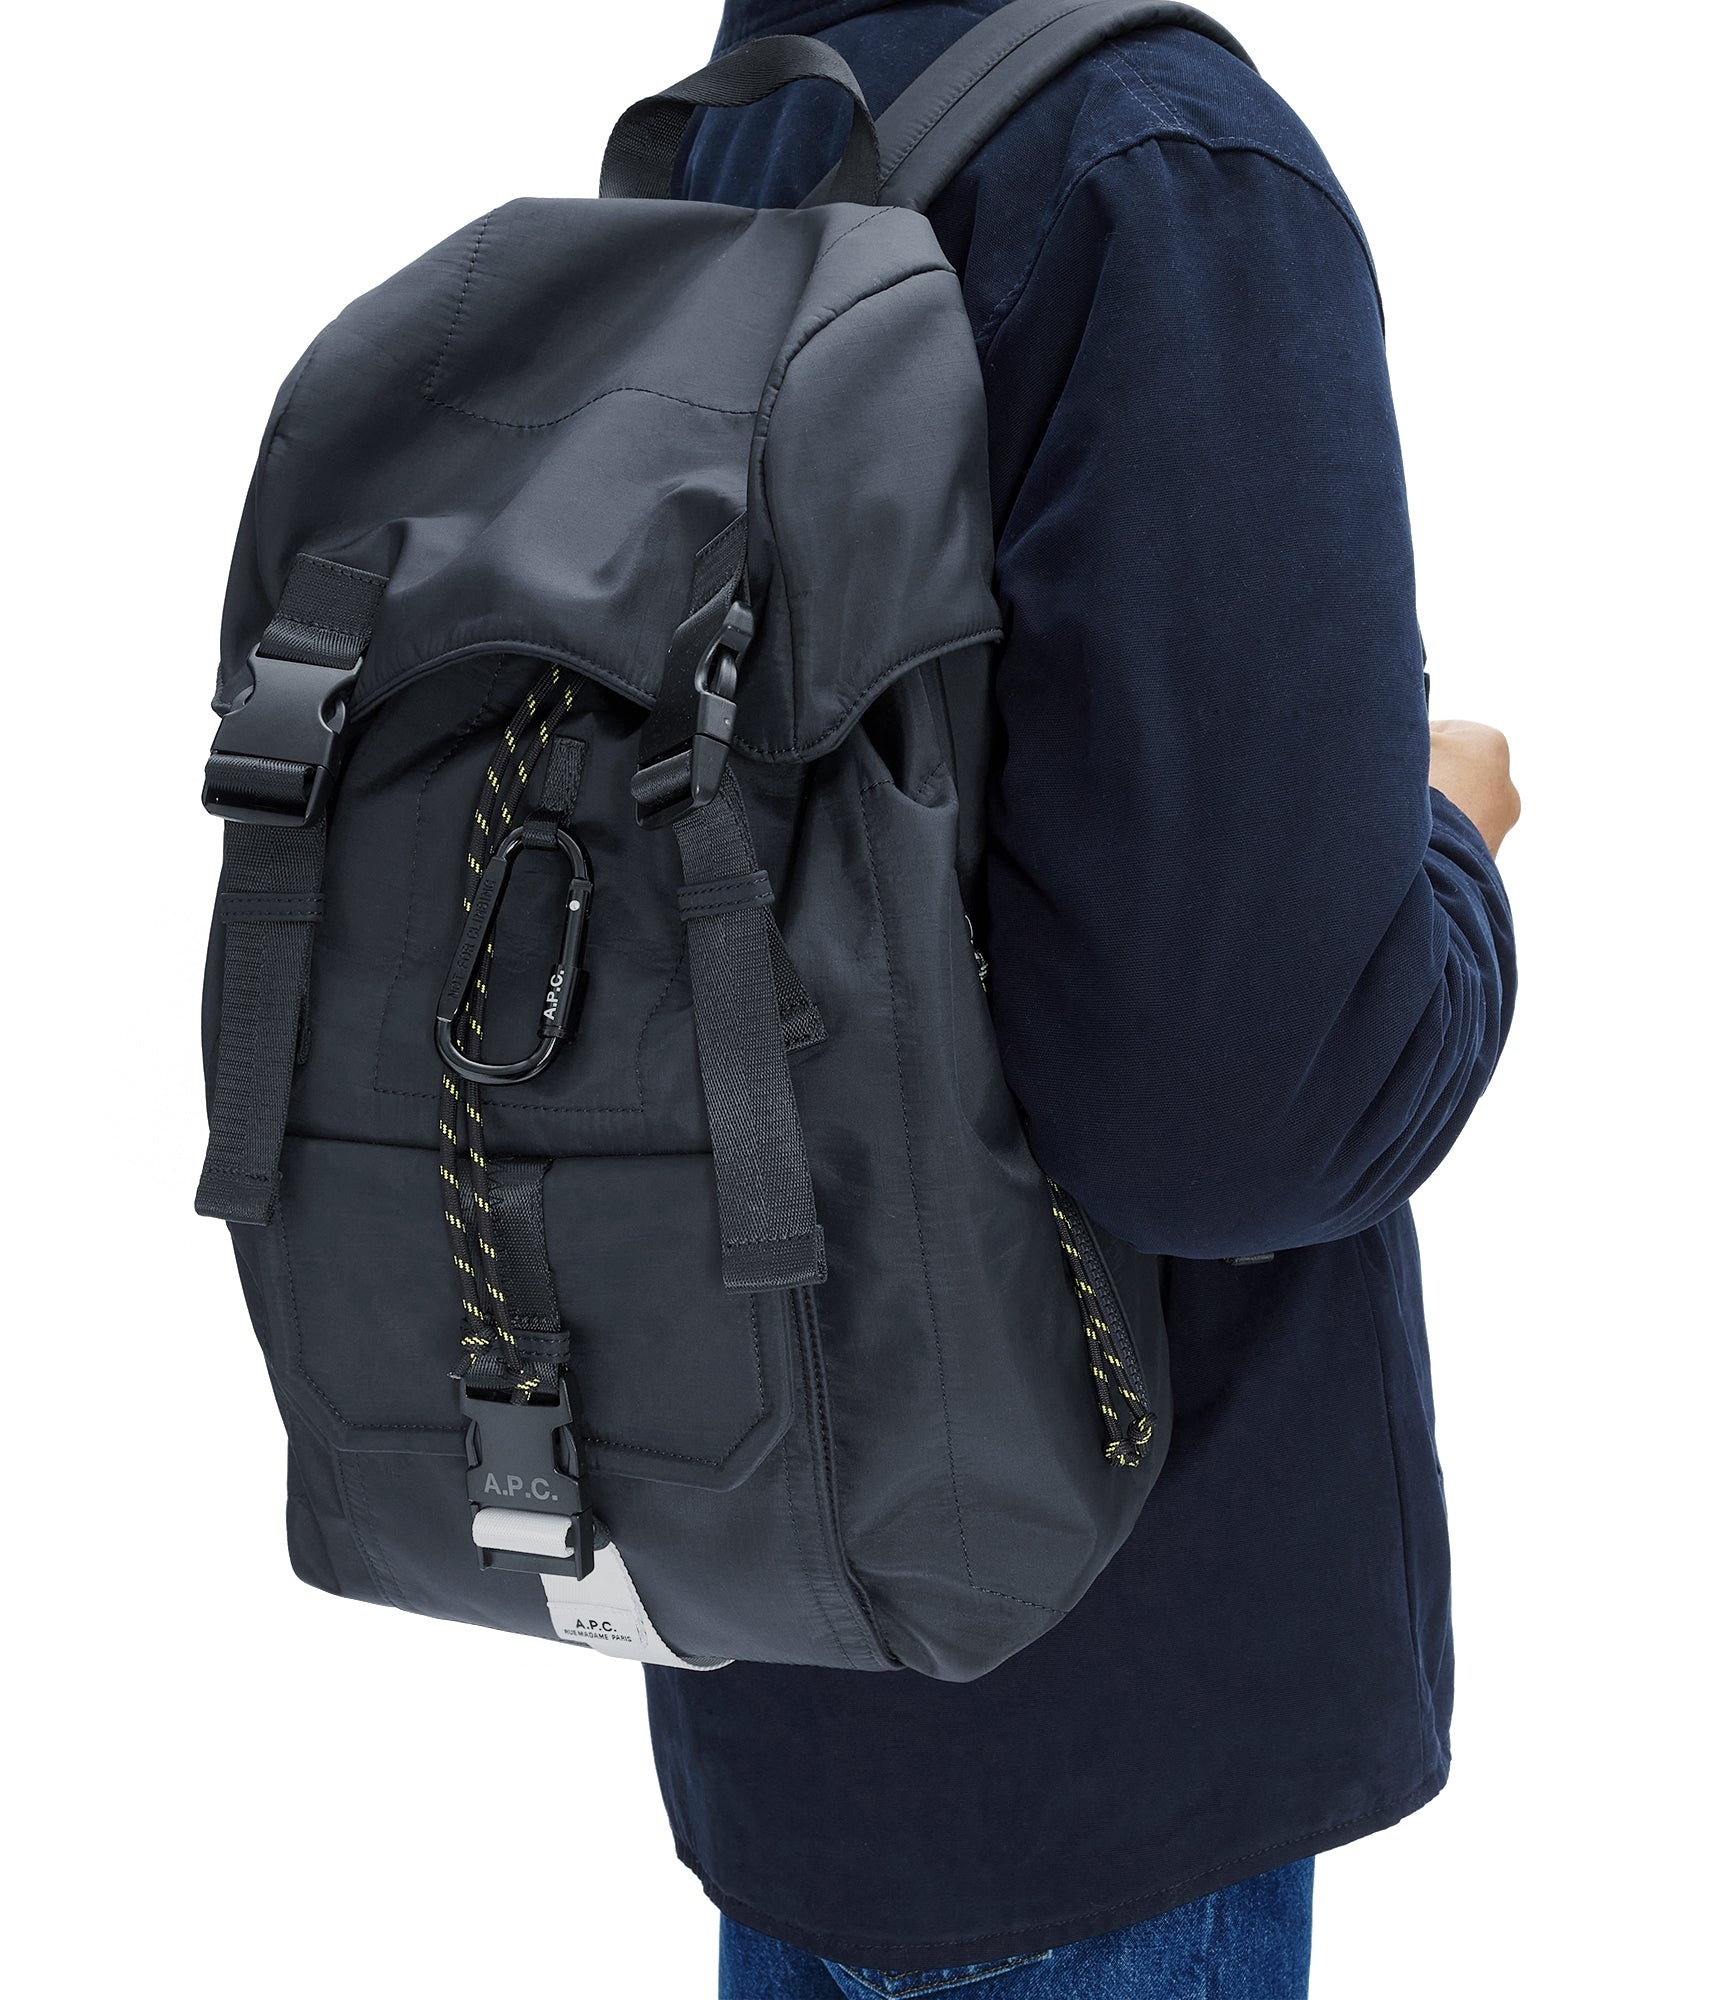 Treck backpack - 3